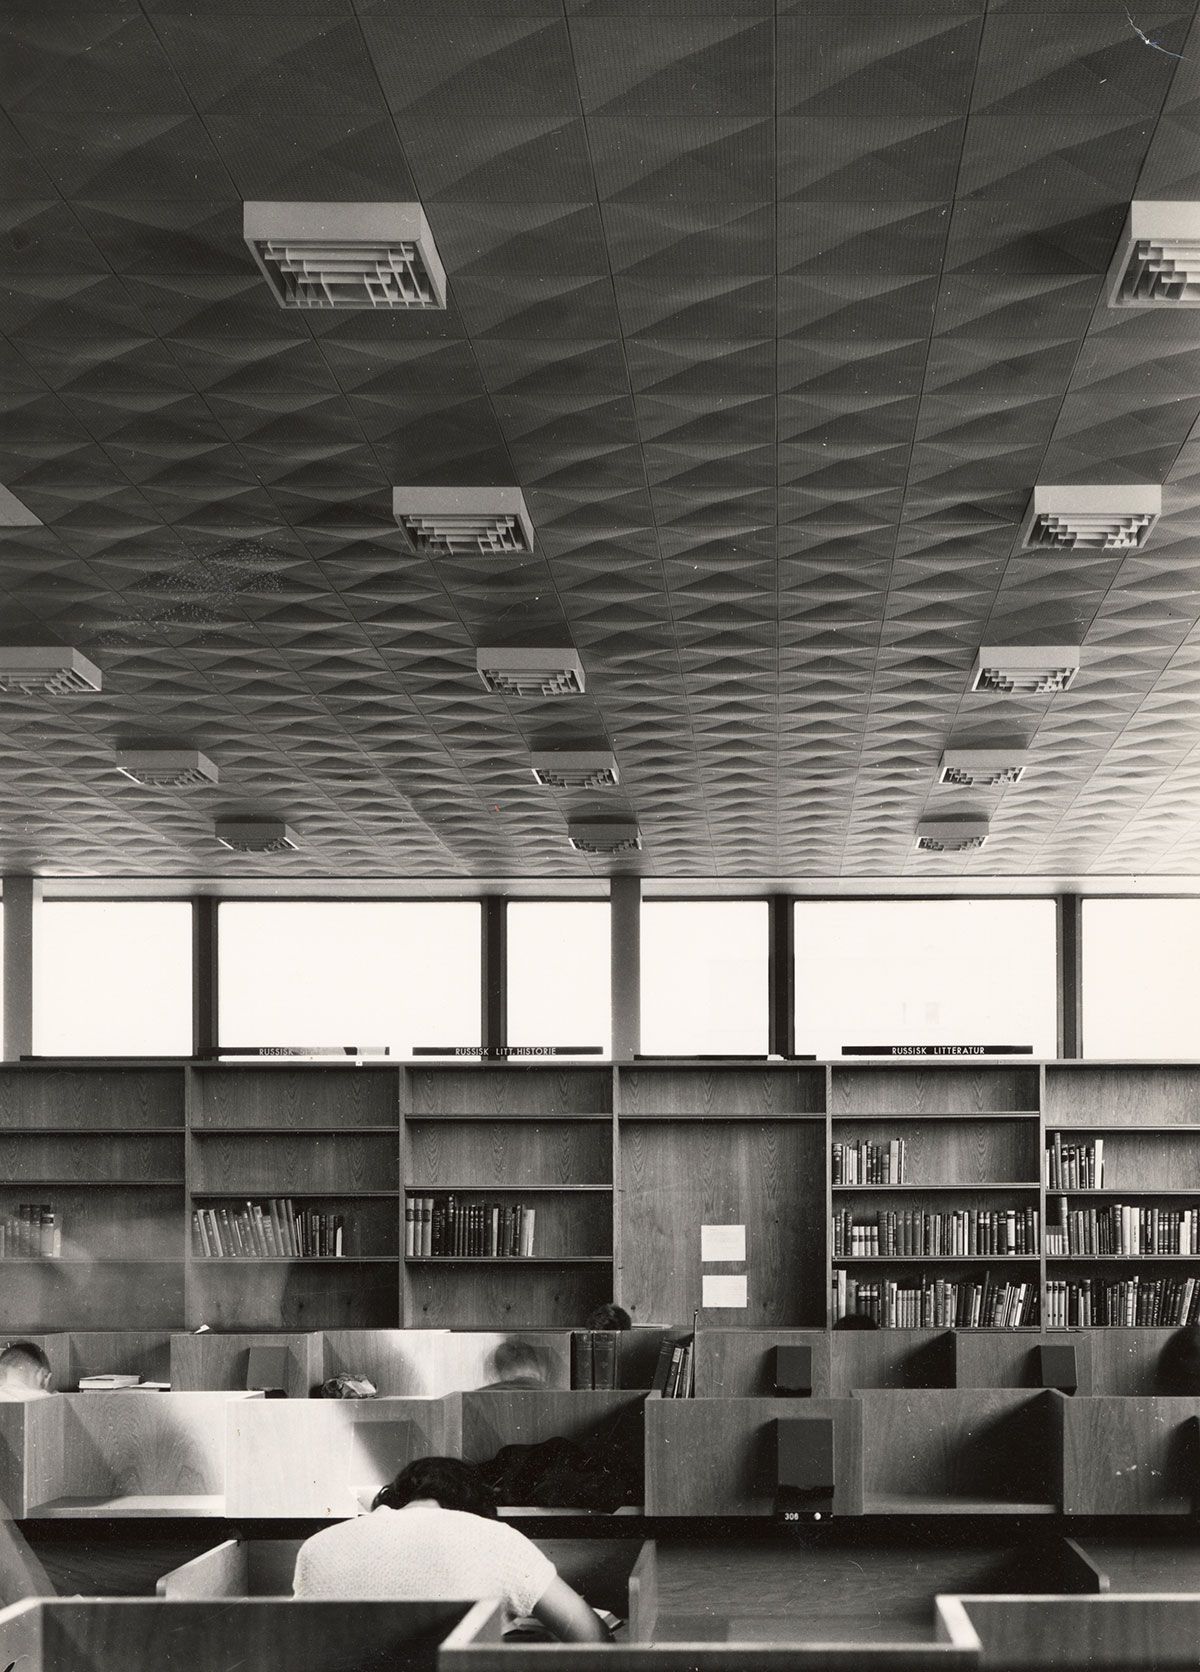 Himlingen i bibliotek- og lesesal er dekket av prefabrikerte takelementer i metall. De gjør at taket får&amp;#160;en viktig rolle&amp;#160;i&amp;#160;interiøret. Her er det også mennesker - studenter!
1963-1965. Fotograf: Teigens fotoatelier.&amp;#160;